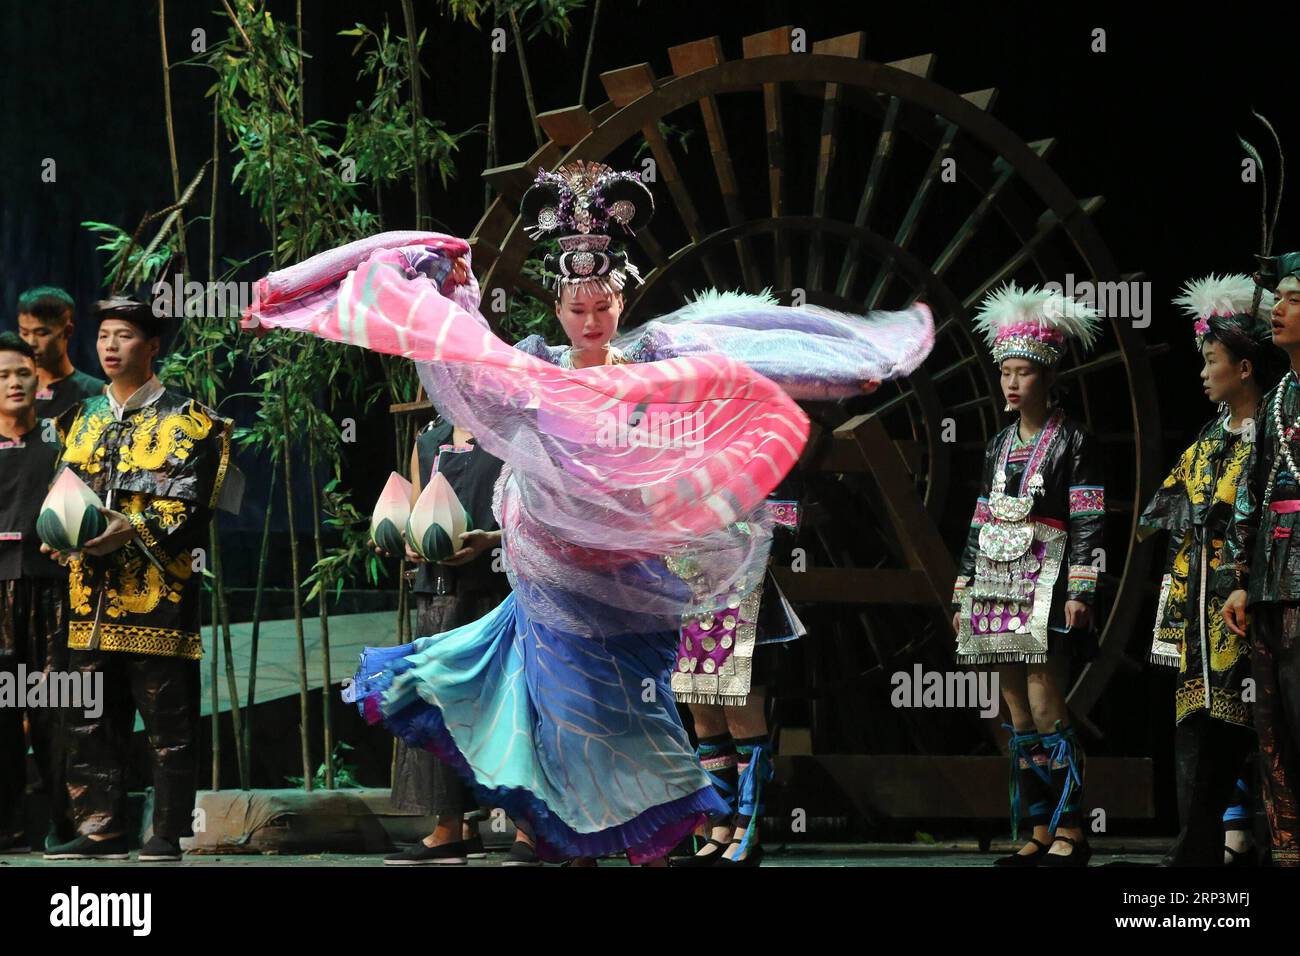 (181011) -- GUIYANG, 11. Oktober 2018 -- Ein Musikdrama der Volksgruppe Dong wird in Guiyang, der Hauptstadt der südwestchinesischen Provinz Guizhou, am 10. Oktober 2018 aufgeführt. ) (Yxb) CHINA-GUIYANG-DONG ETHNISCHE GRUPPEN-MUSIKALISCHE DRAMA(CN) ZhangxHui PUBLICATIONxNOTxINxCHN Stockfoto